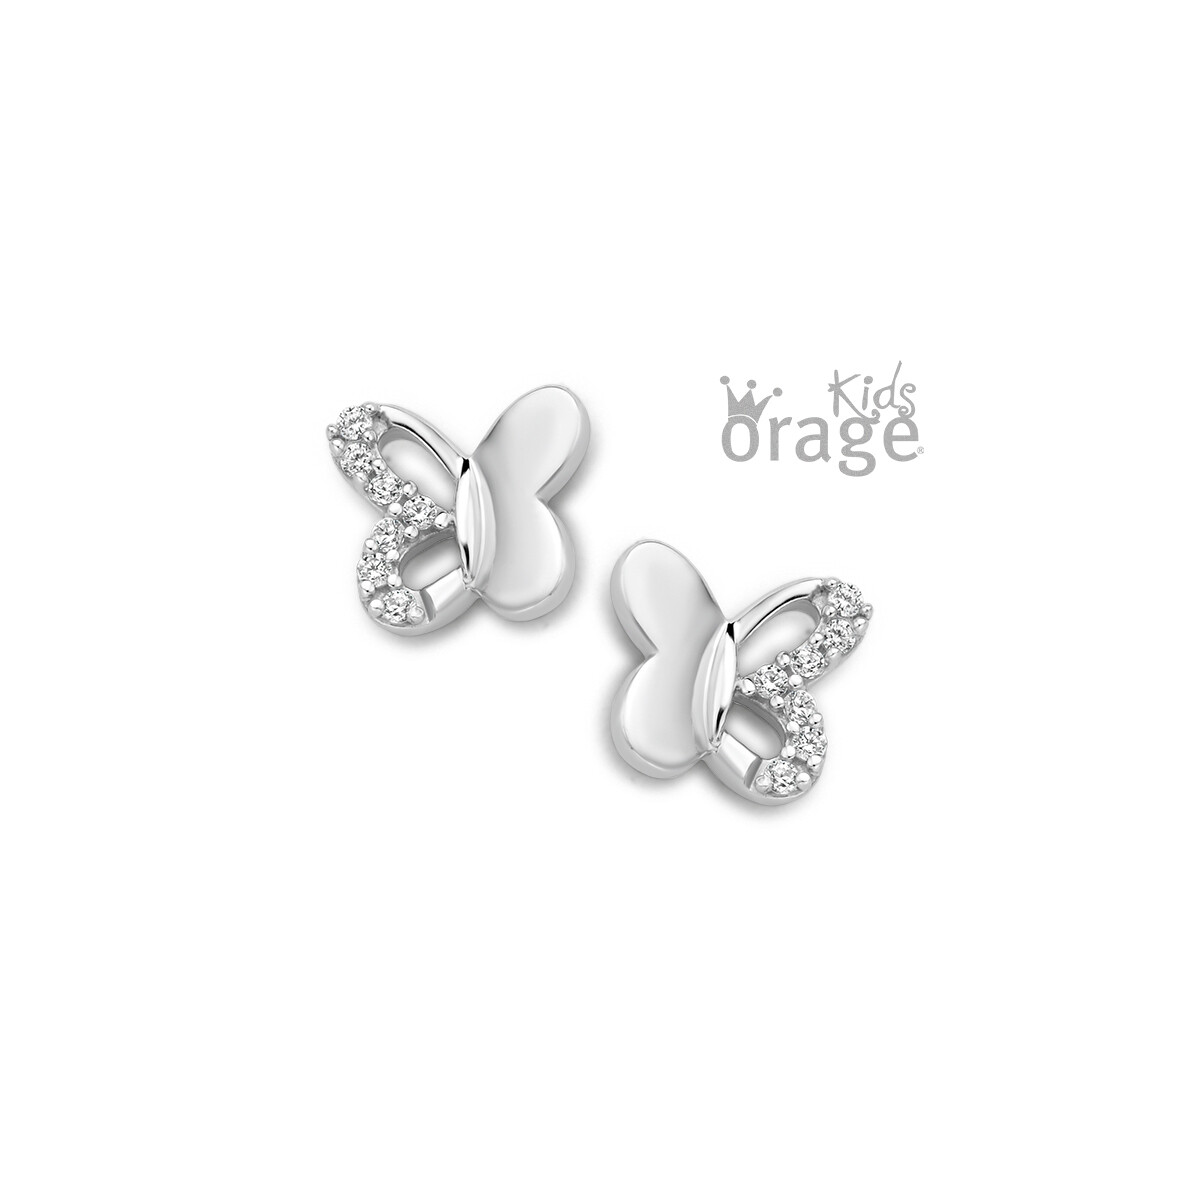 Boucles d'oreilles Orage Kids K2301